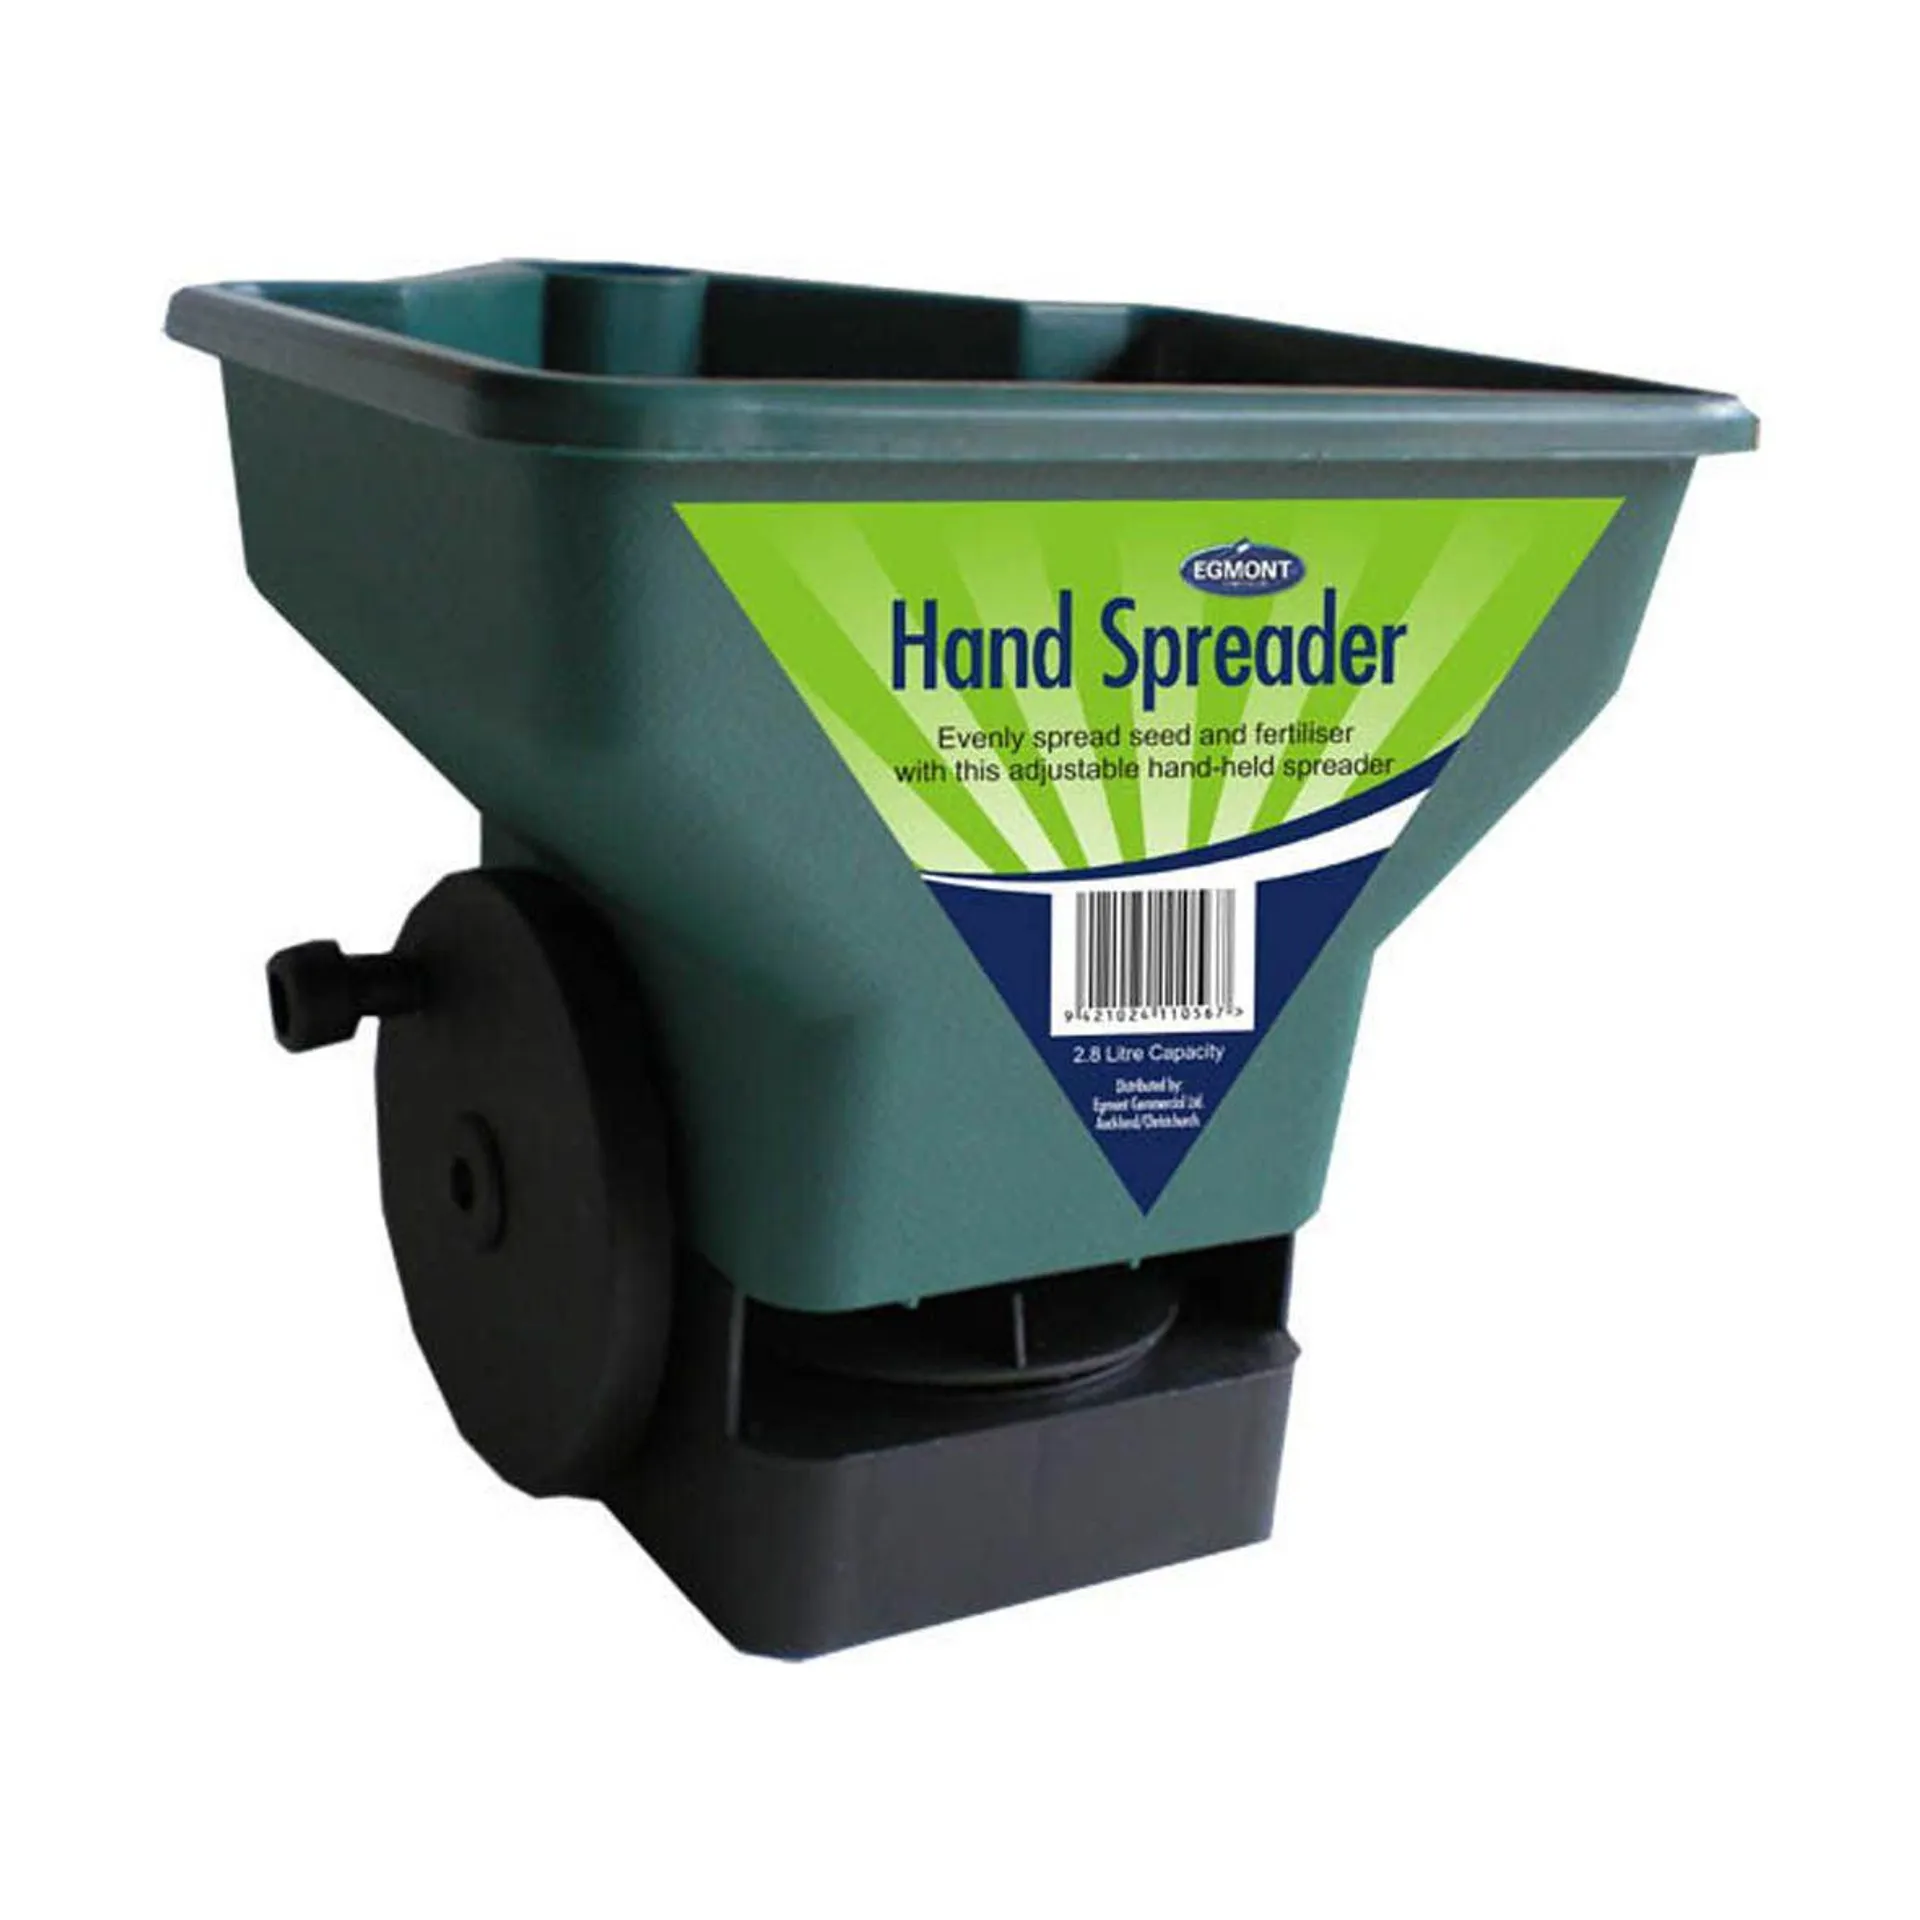 Hand Spreader - 2.8L